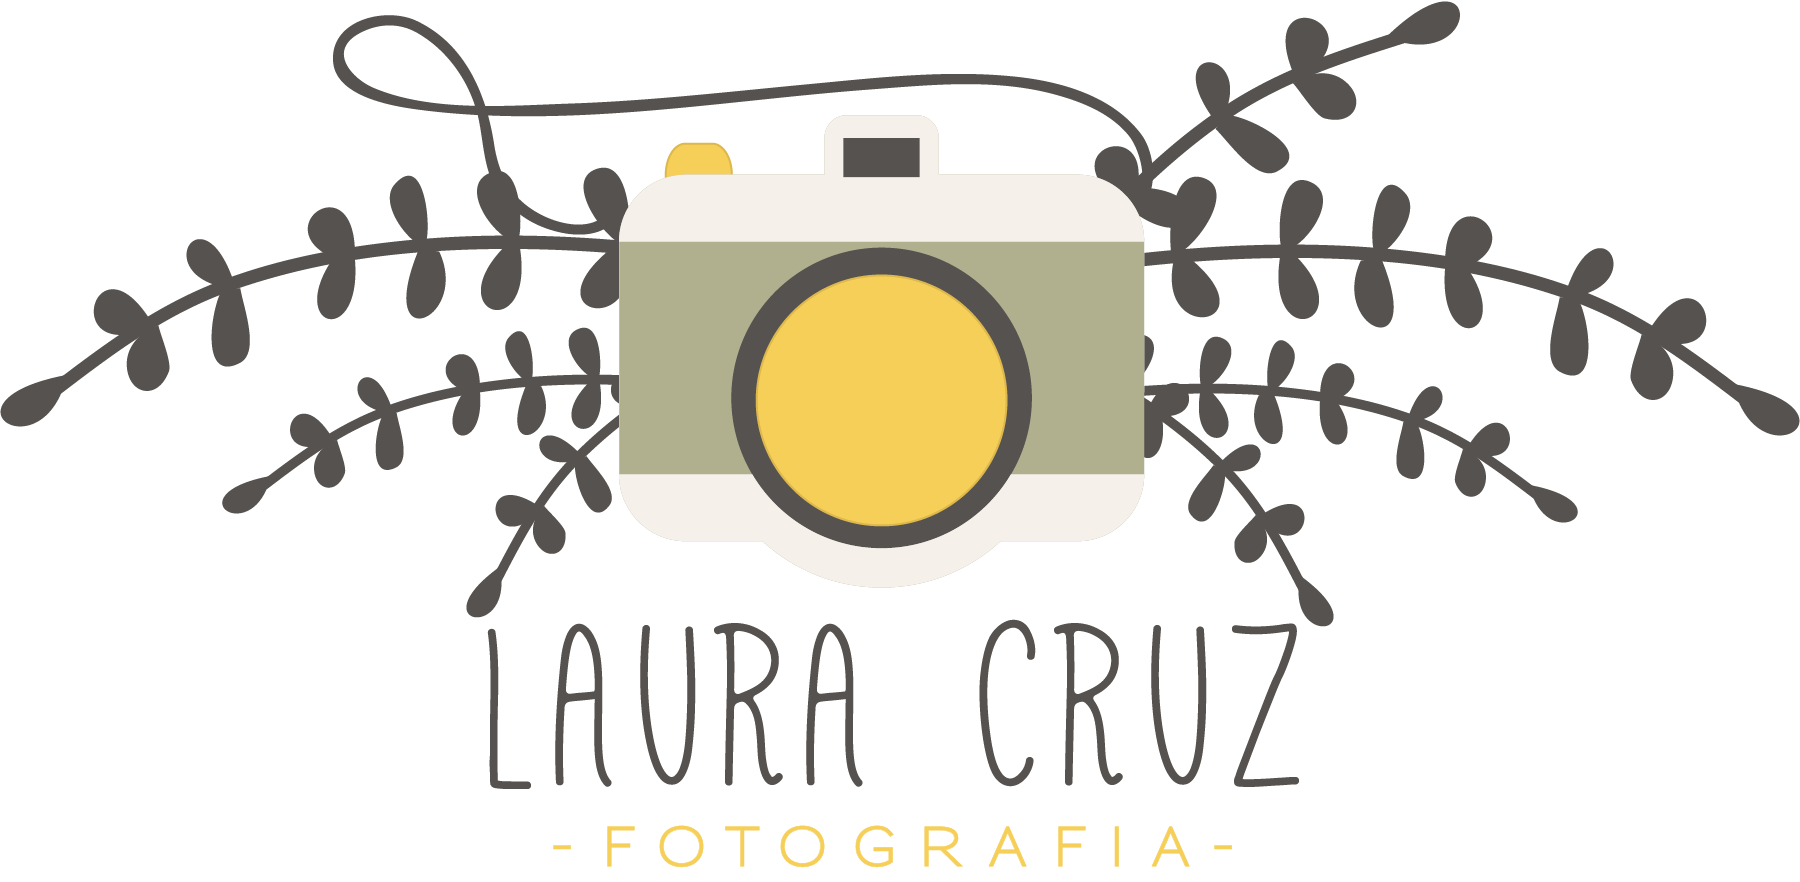 LauraCruz | FOTOGRAFIA Logo